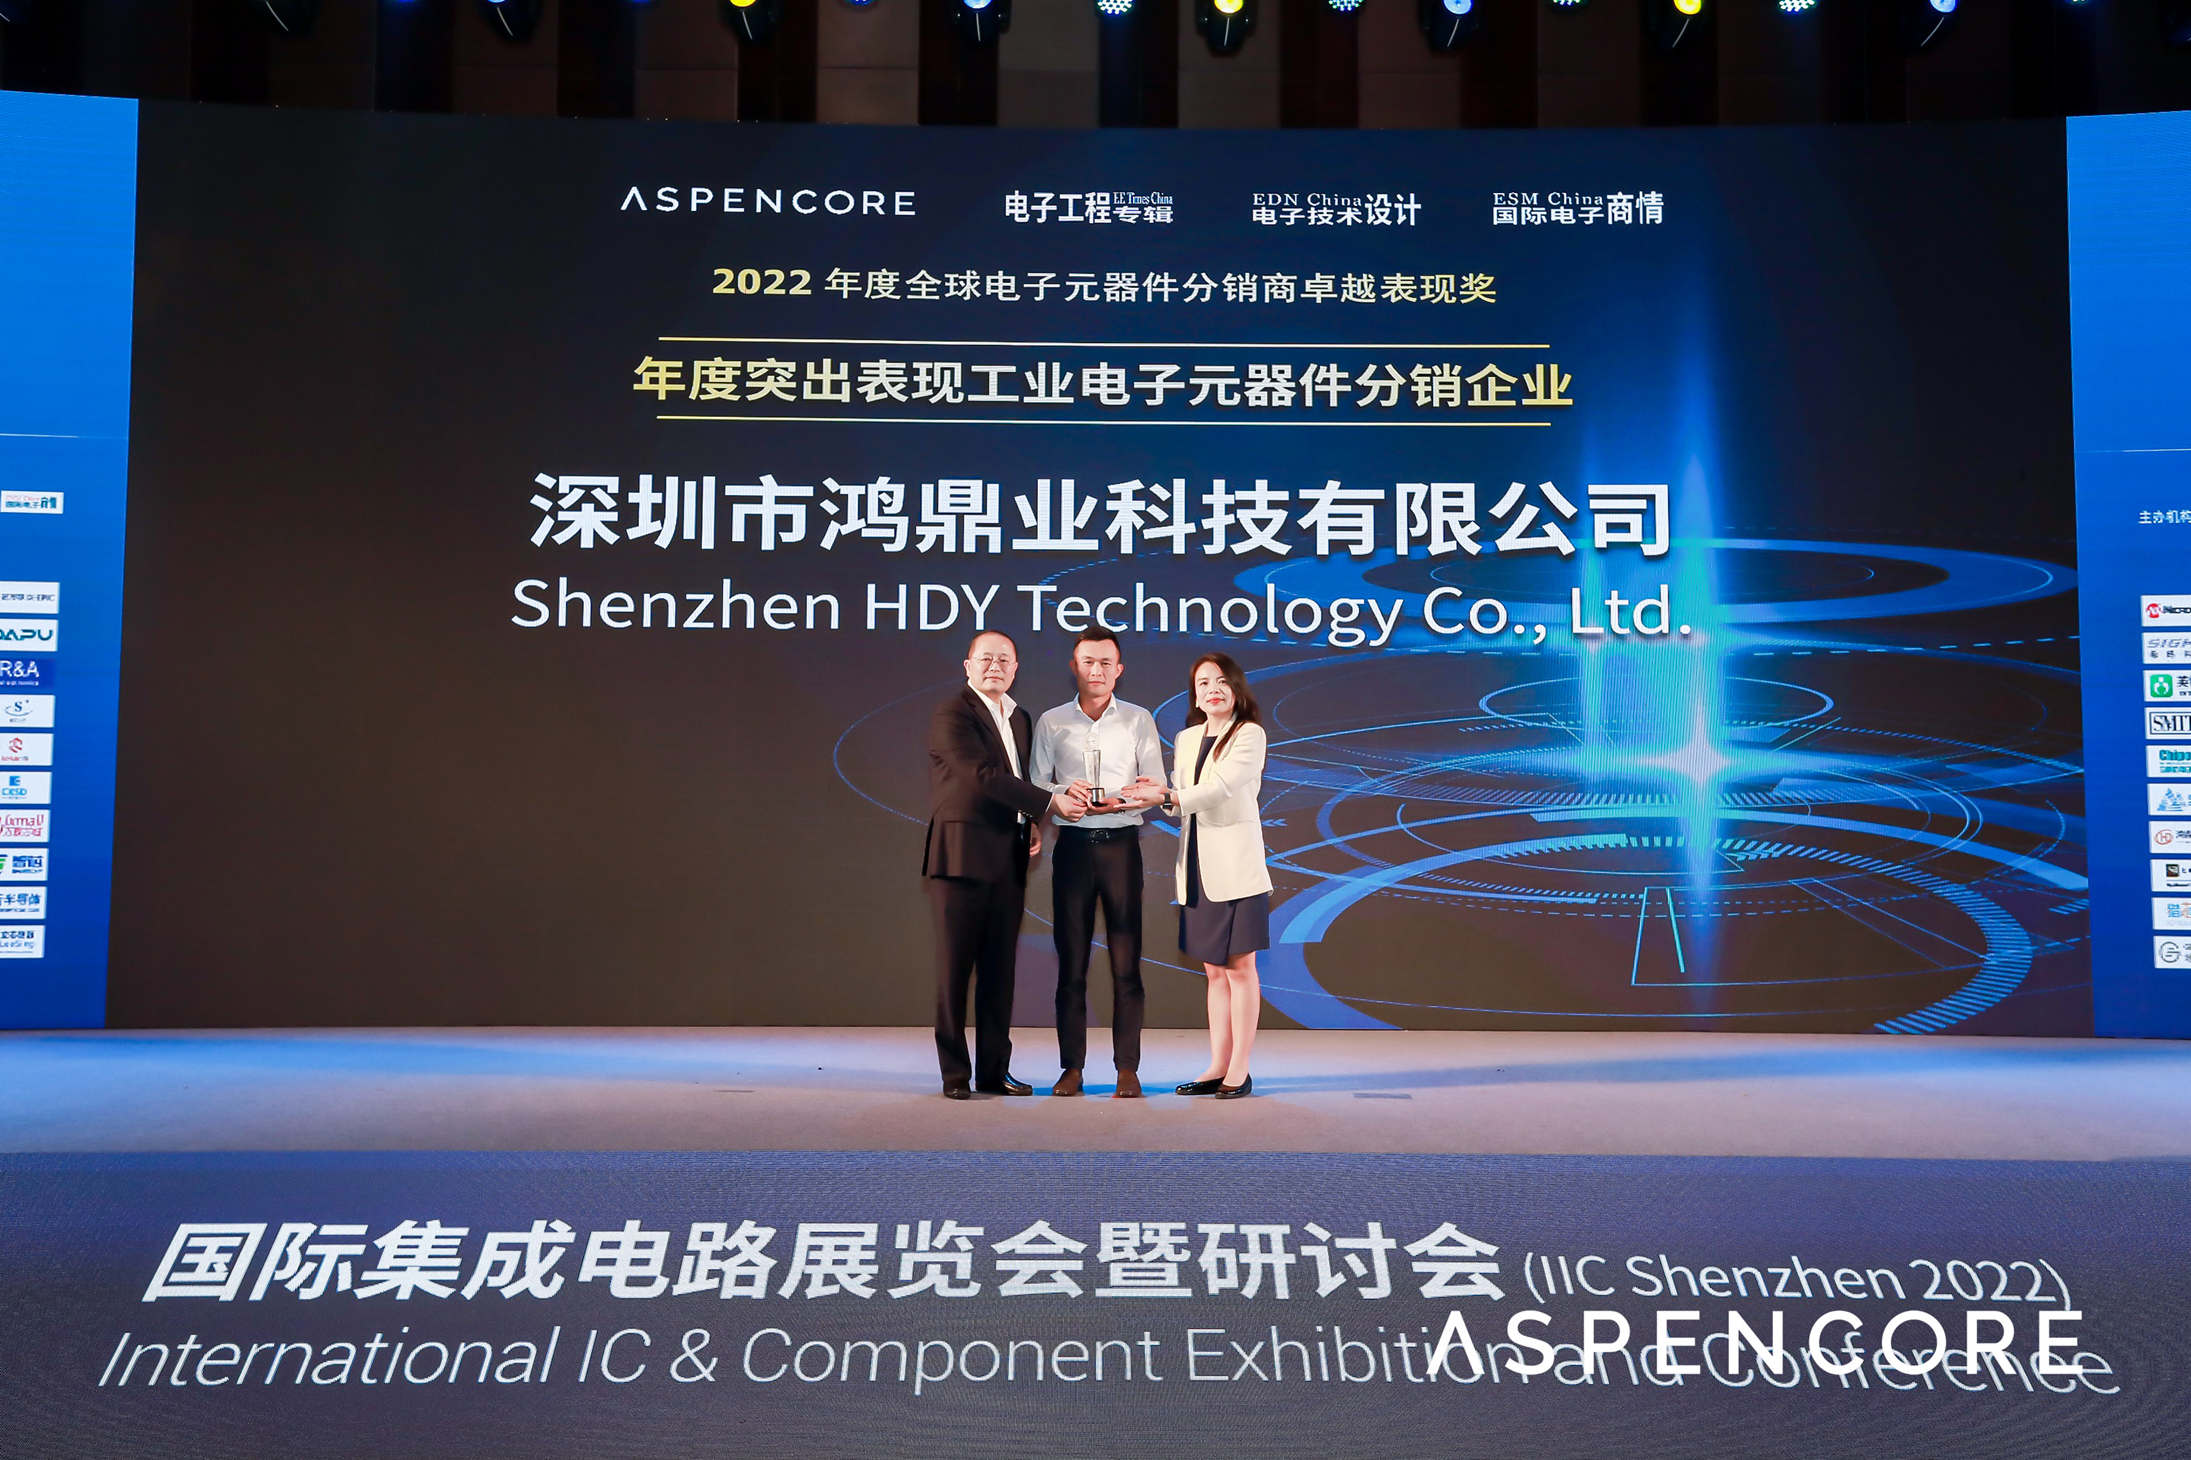 鴻鼎業榮獲2022「年度突出表現工業電子元器件分銷企業」獎項